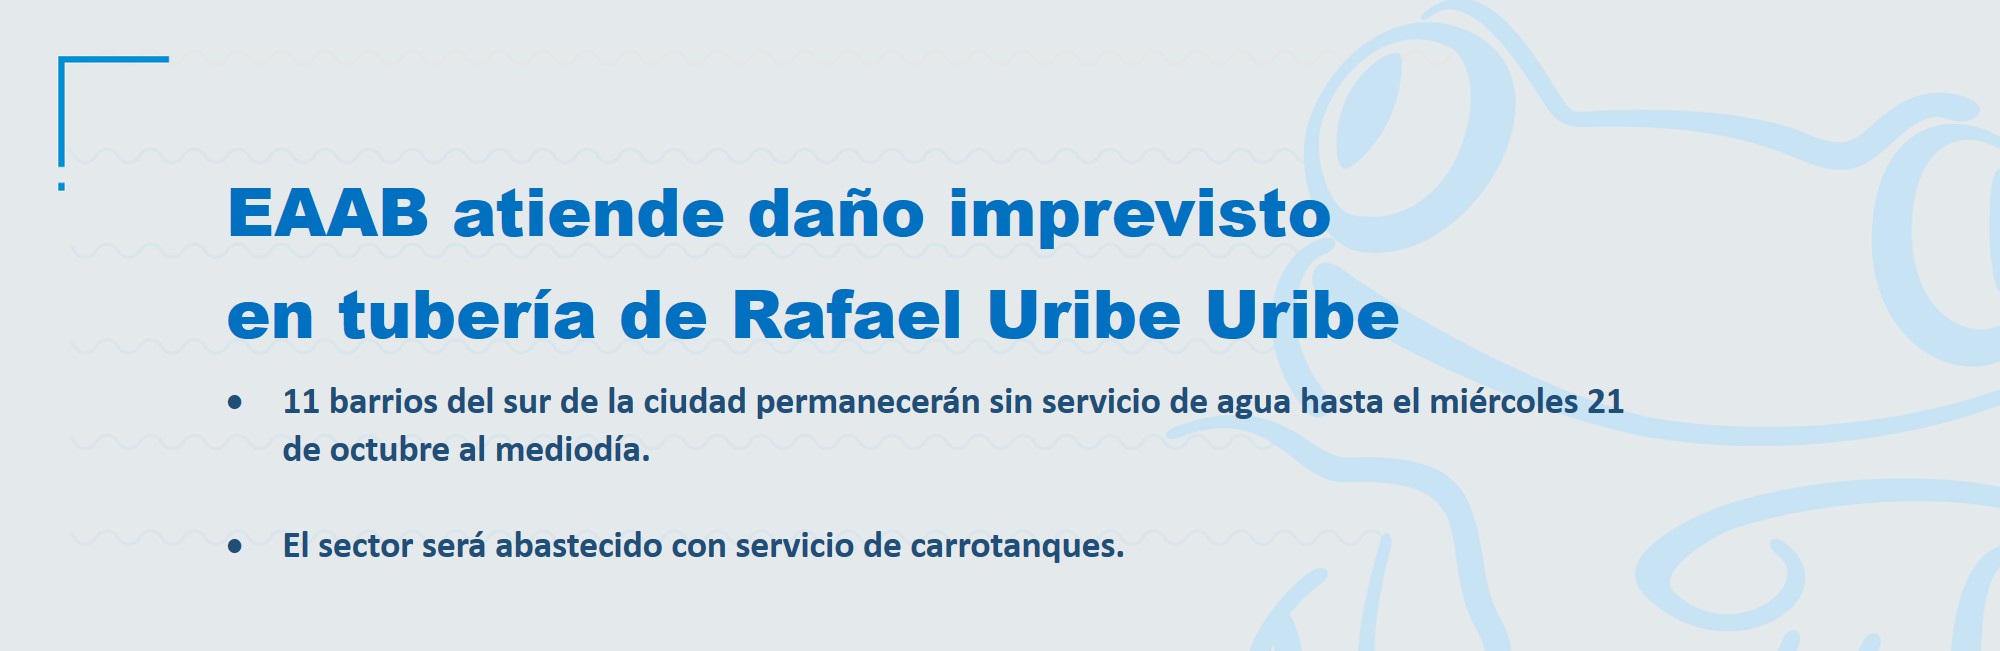 EAAB atiende daño imprevisto en tubería de Rafael Uribe Uribe